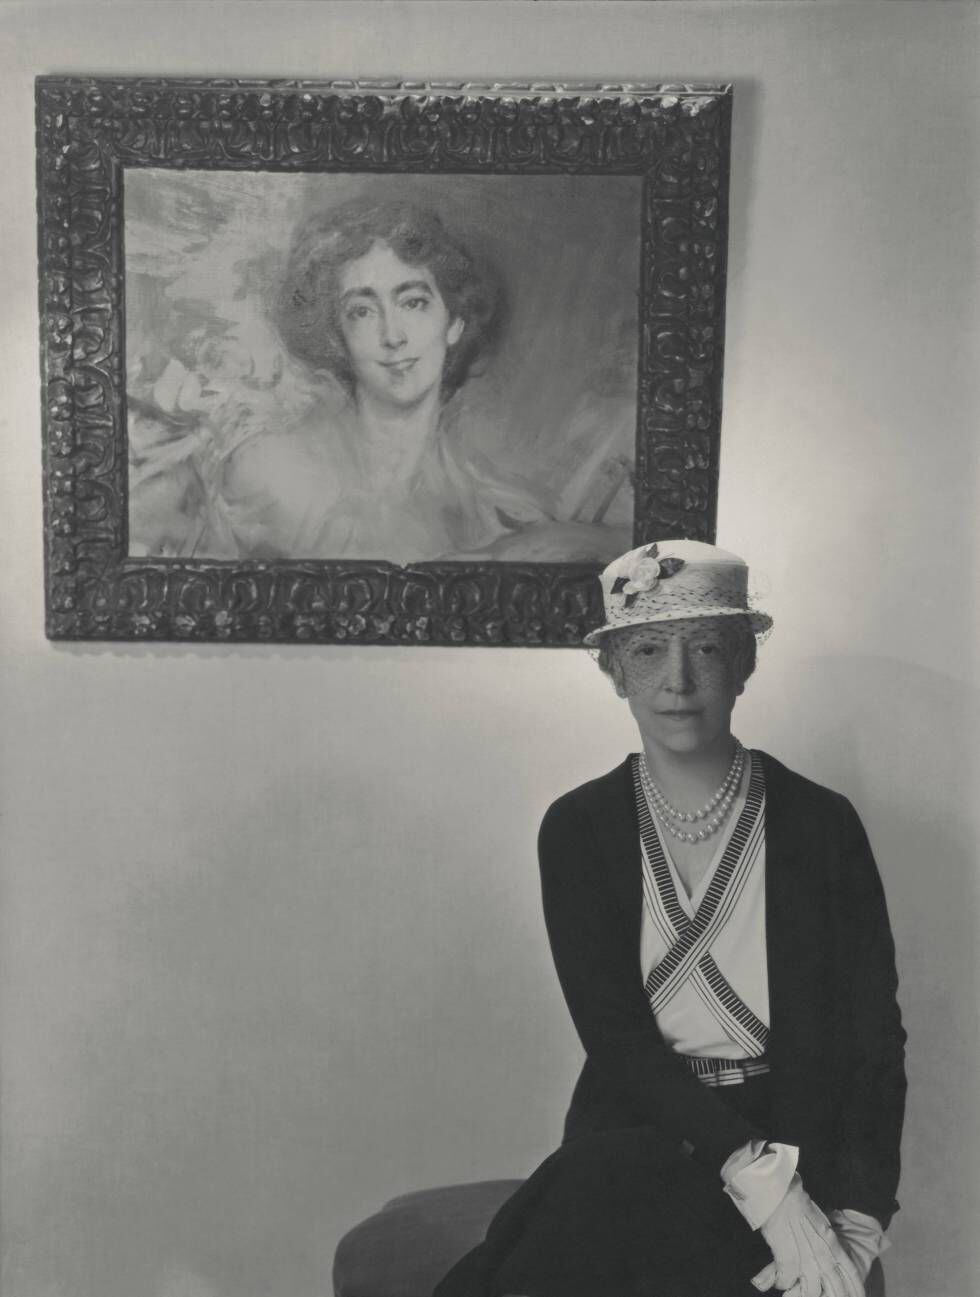 Las dos vidas de Elsie de Wolfe. Fotografiada por Vogue en 1933, cuando ya era Lady Mendl, casada con Sir Charles Mendl, frente a un retrato que le hizo Boldini en 1905, los años en los que construyó su fama como actriz y luego decoradorra, en los que vivió en lo que entonces se conocía como 